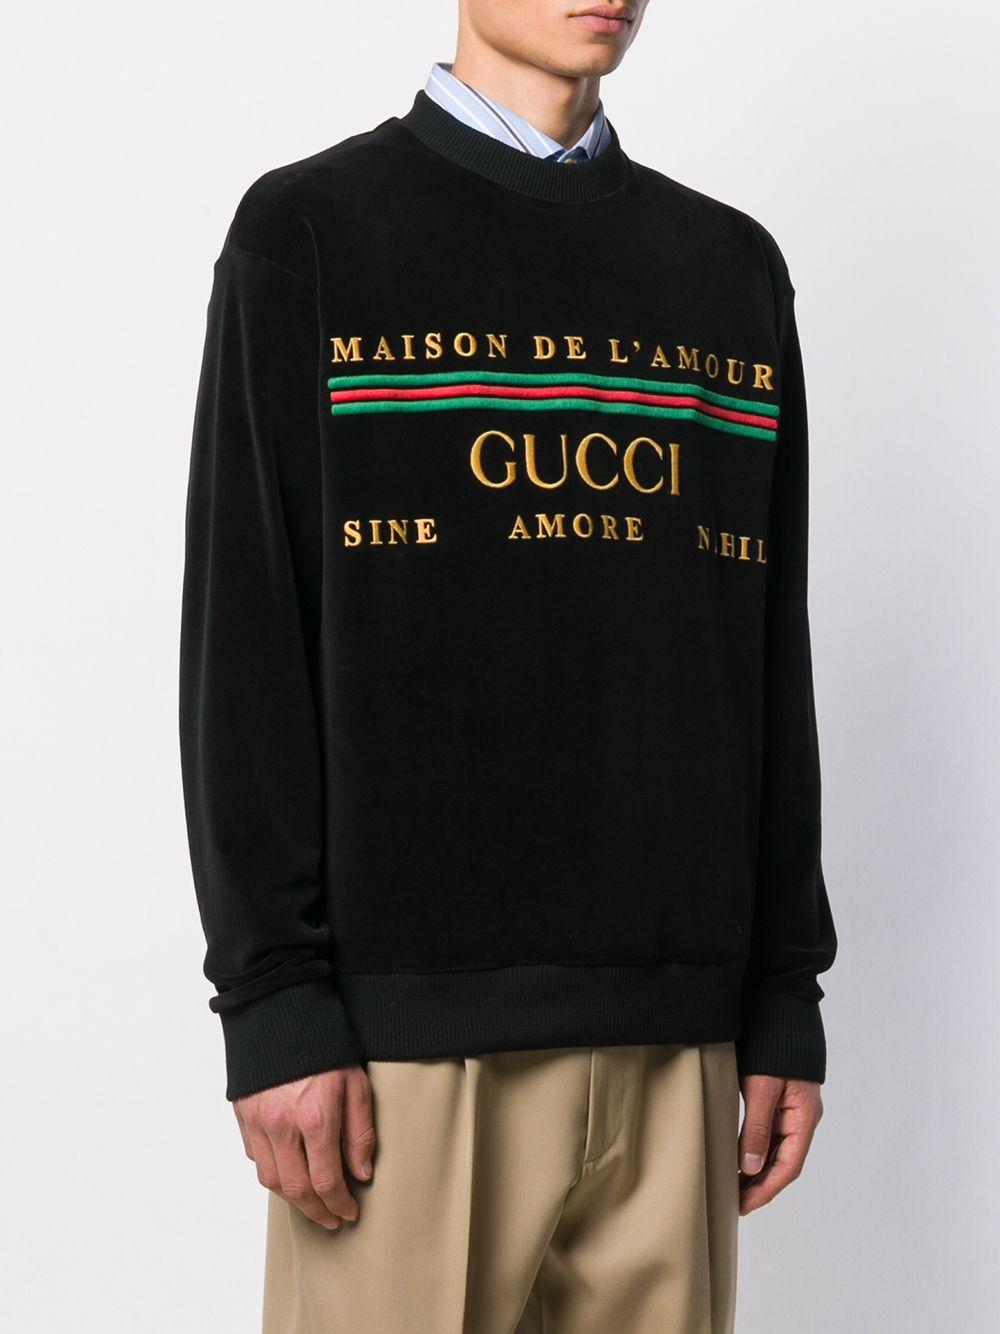 Gucci Maison De L'amour Velvet Sweatshirt in Black for Men - Lyst